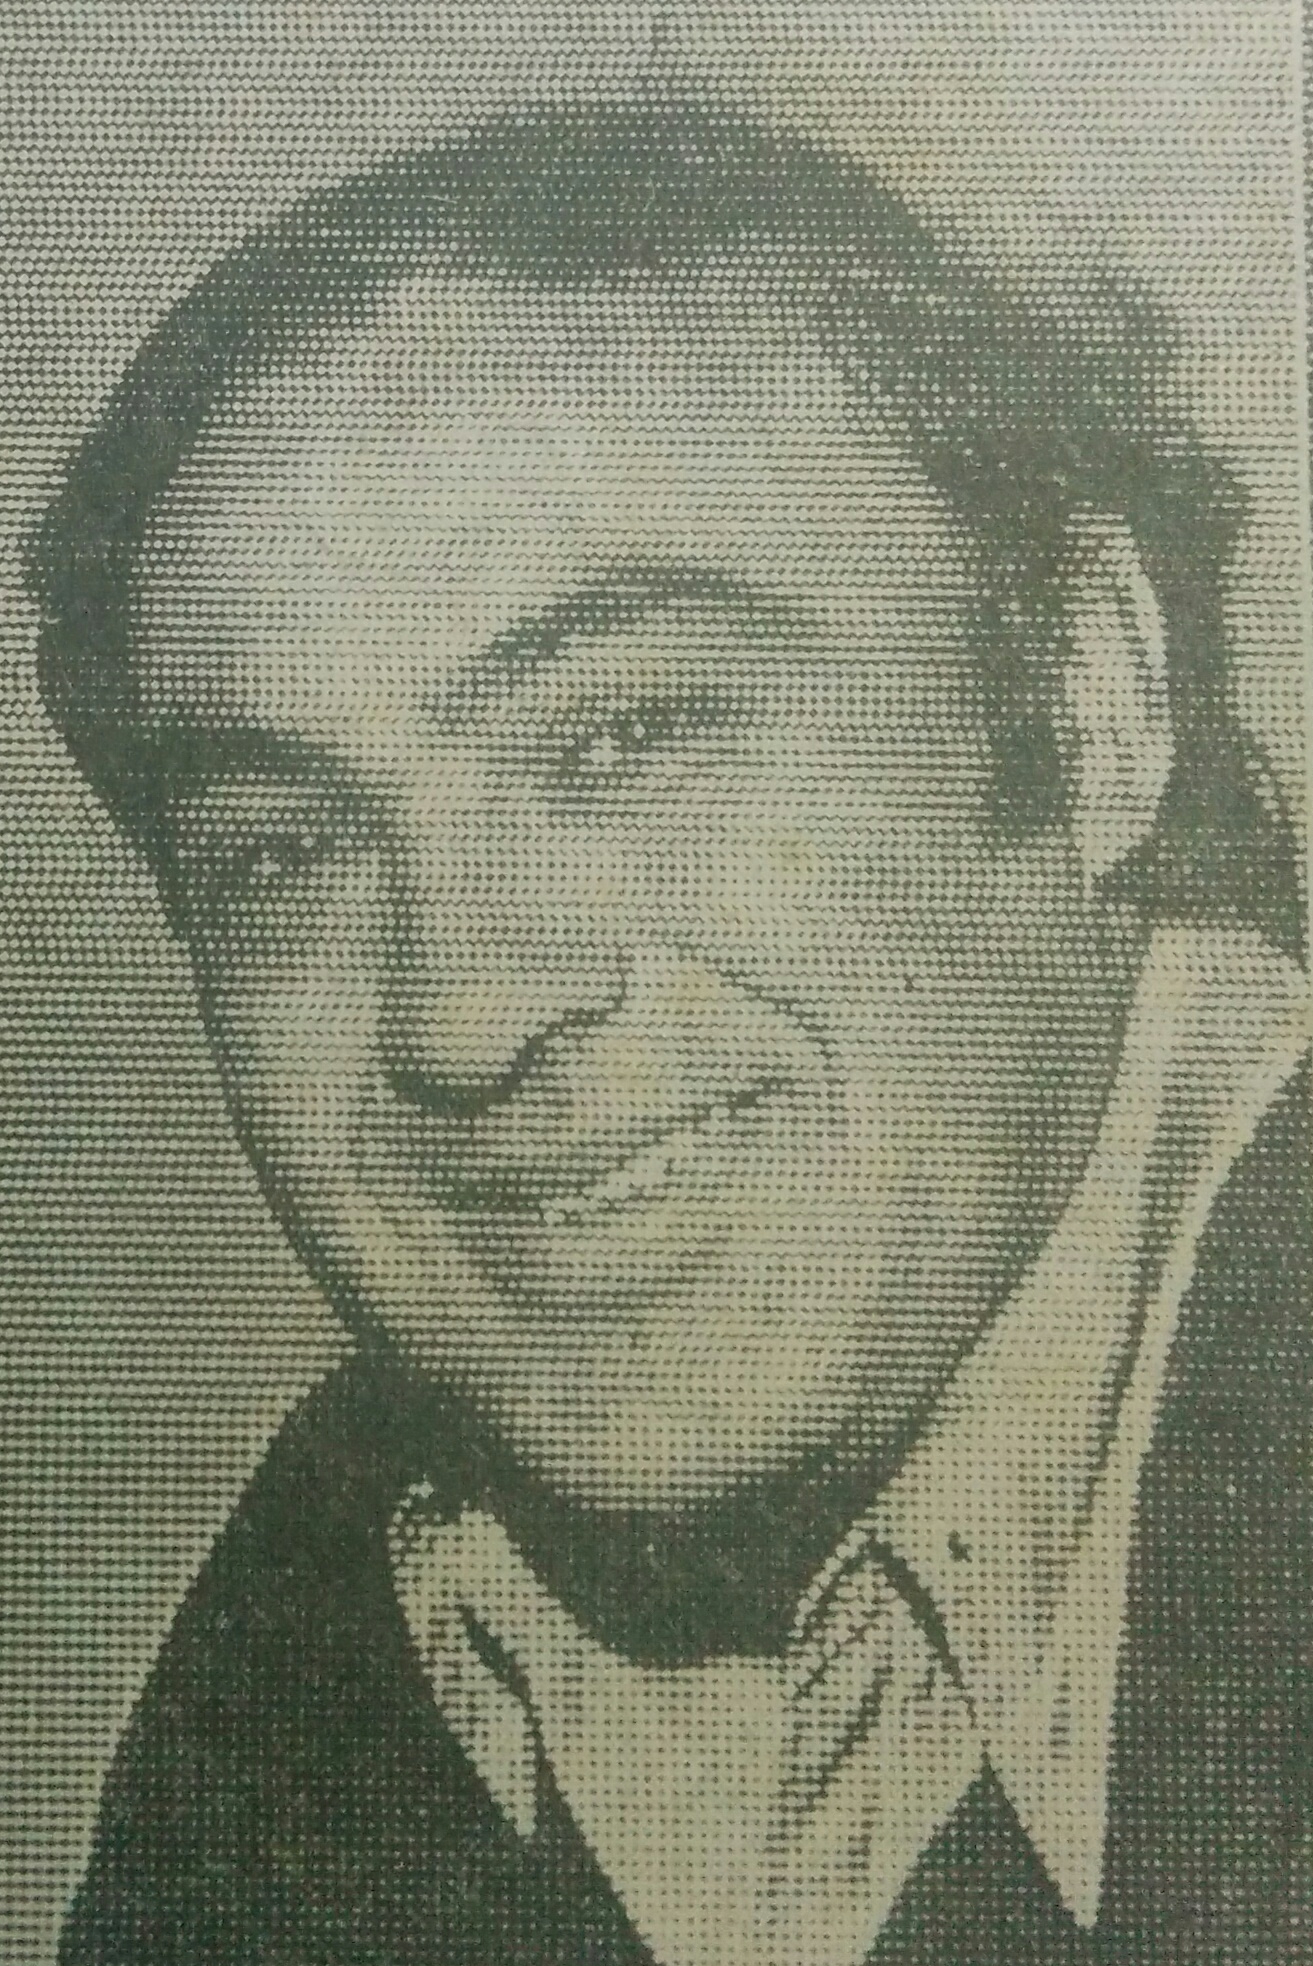 El docente y periodista, José Ramón Ponce (1942-2000).